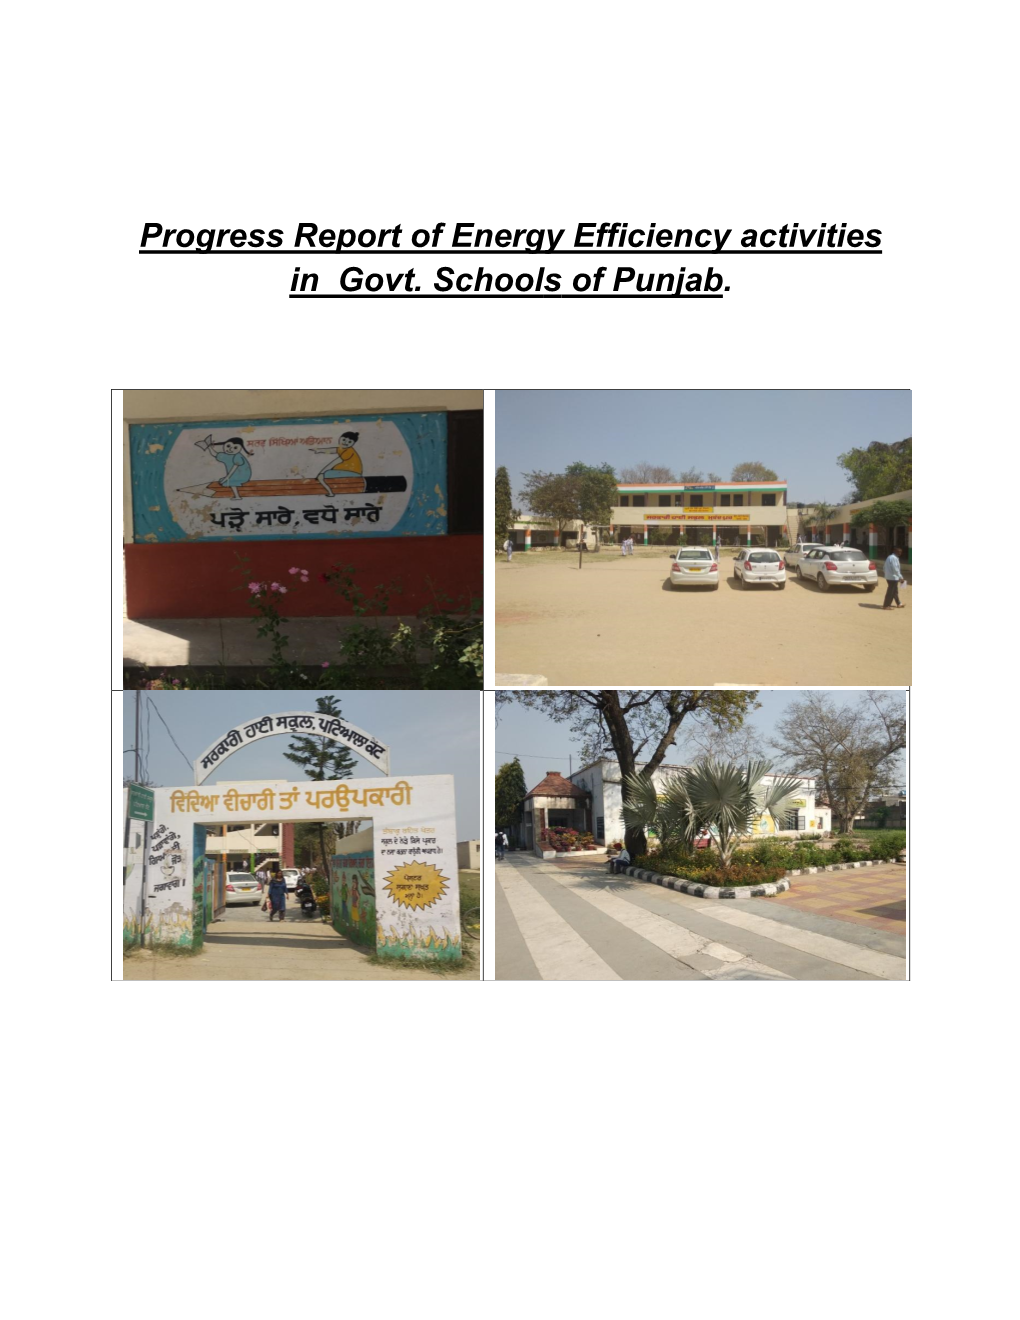 Progress Report of Energy Efficiency Activities in Govt. Schools of Punjab